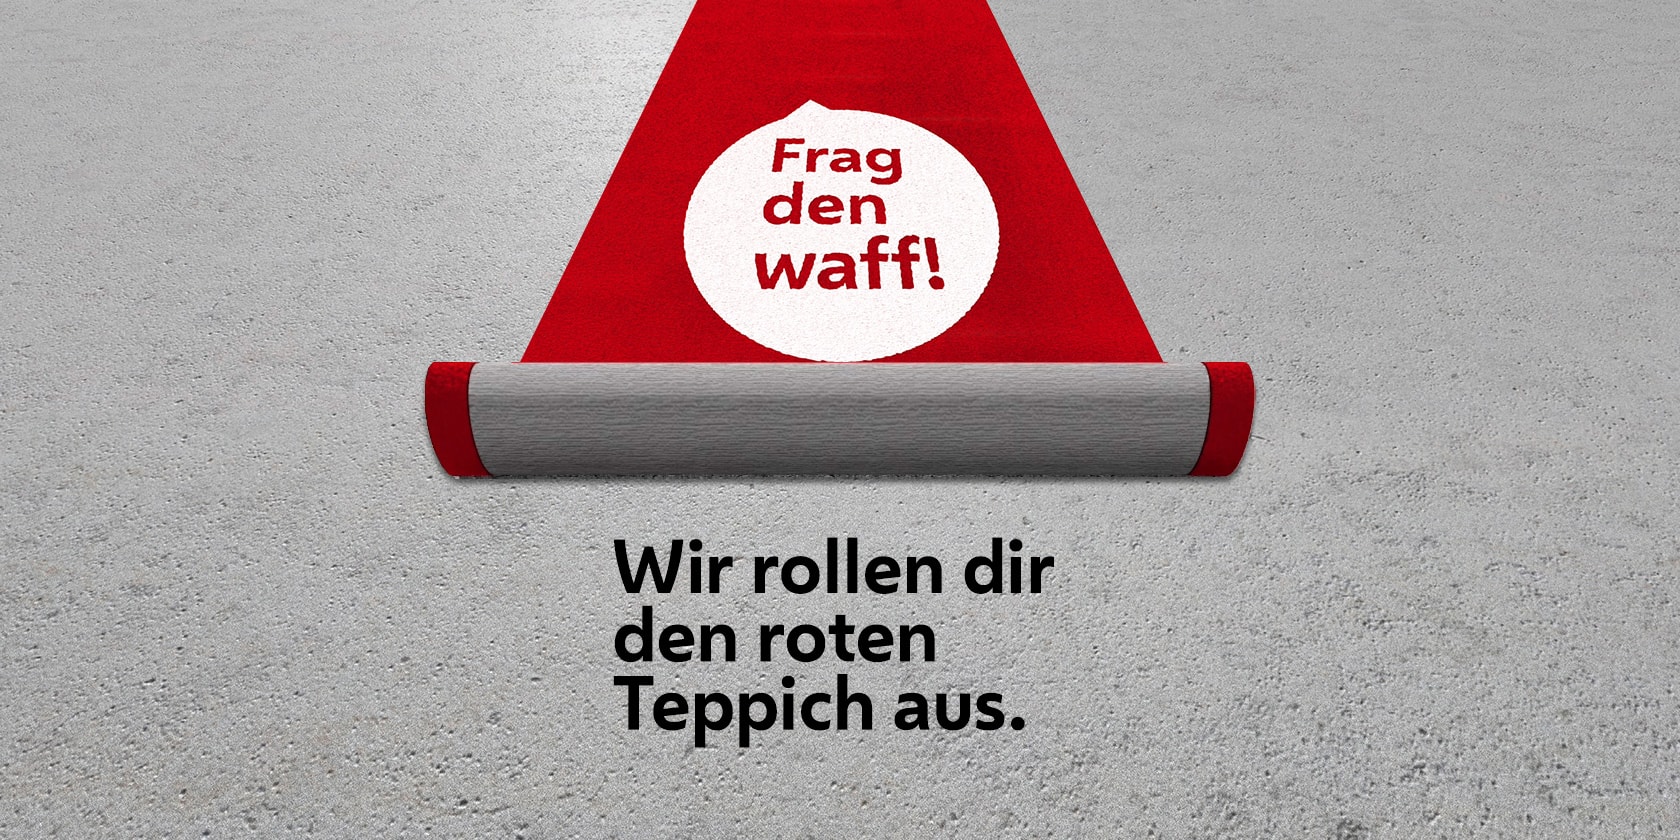 Kampagnen Sujet Roter Teppich "Frag den waff"